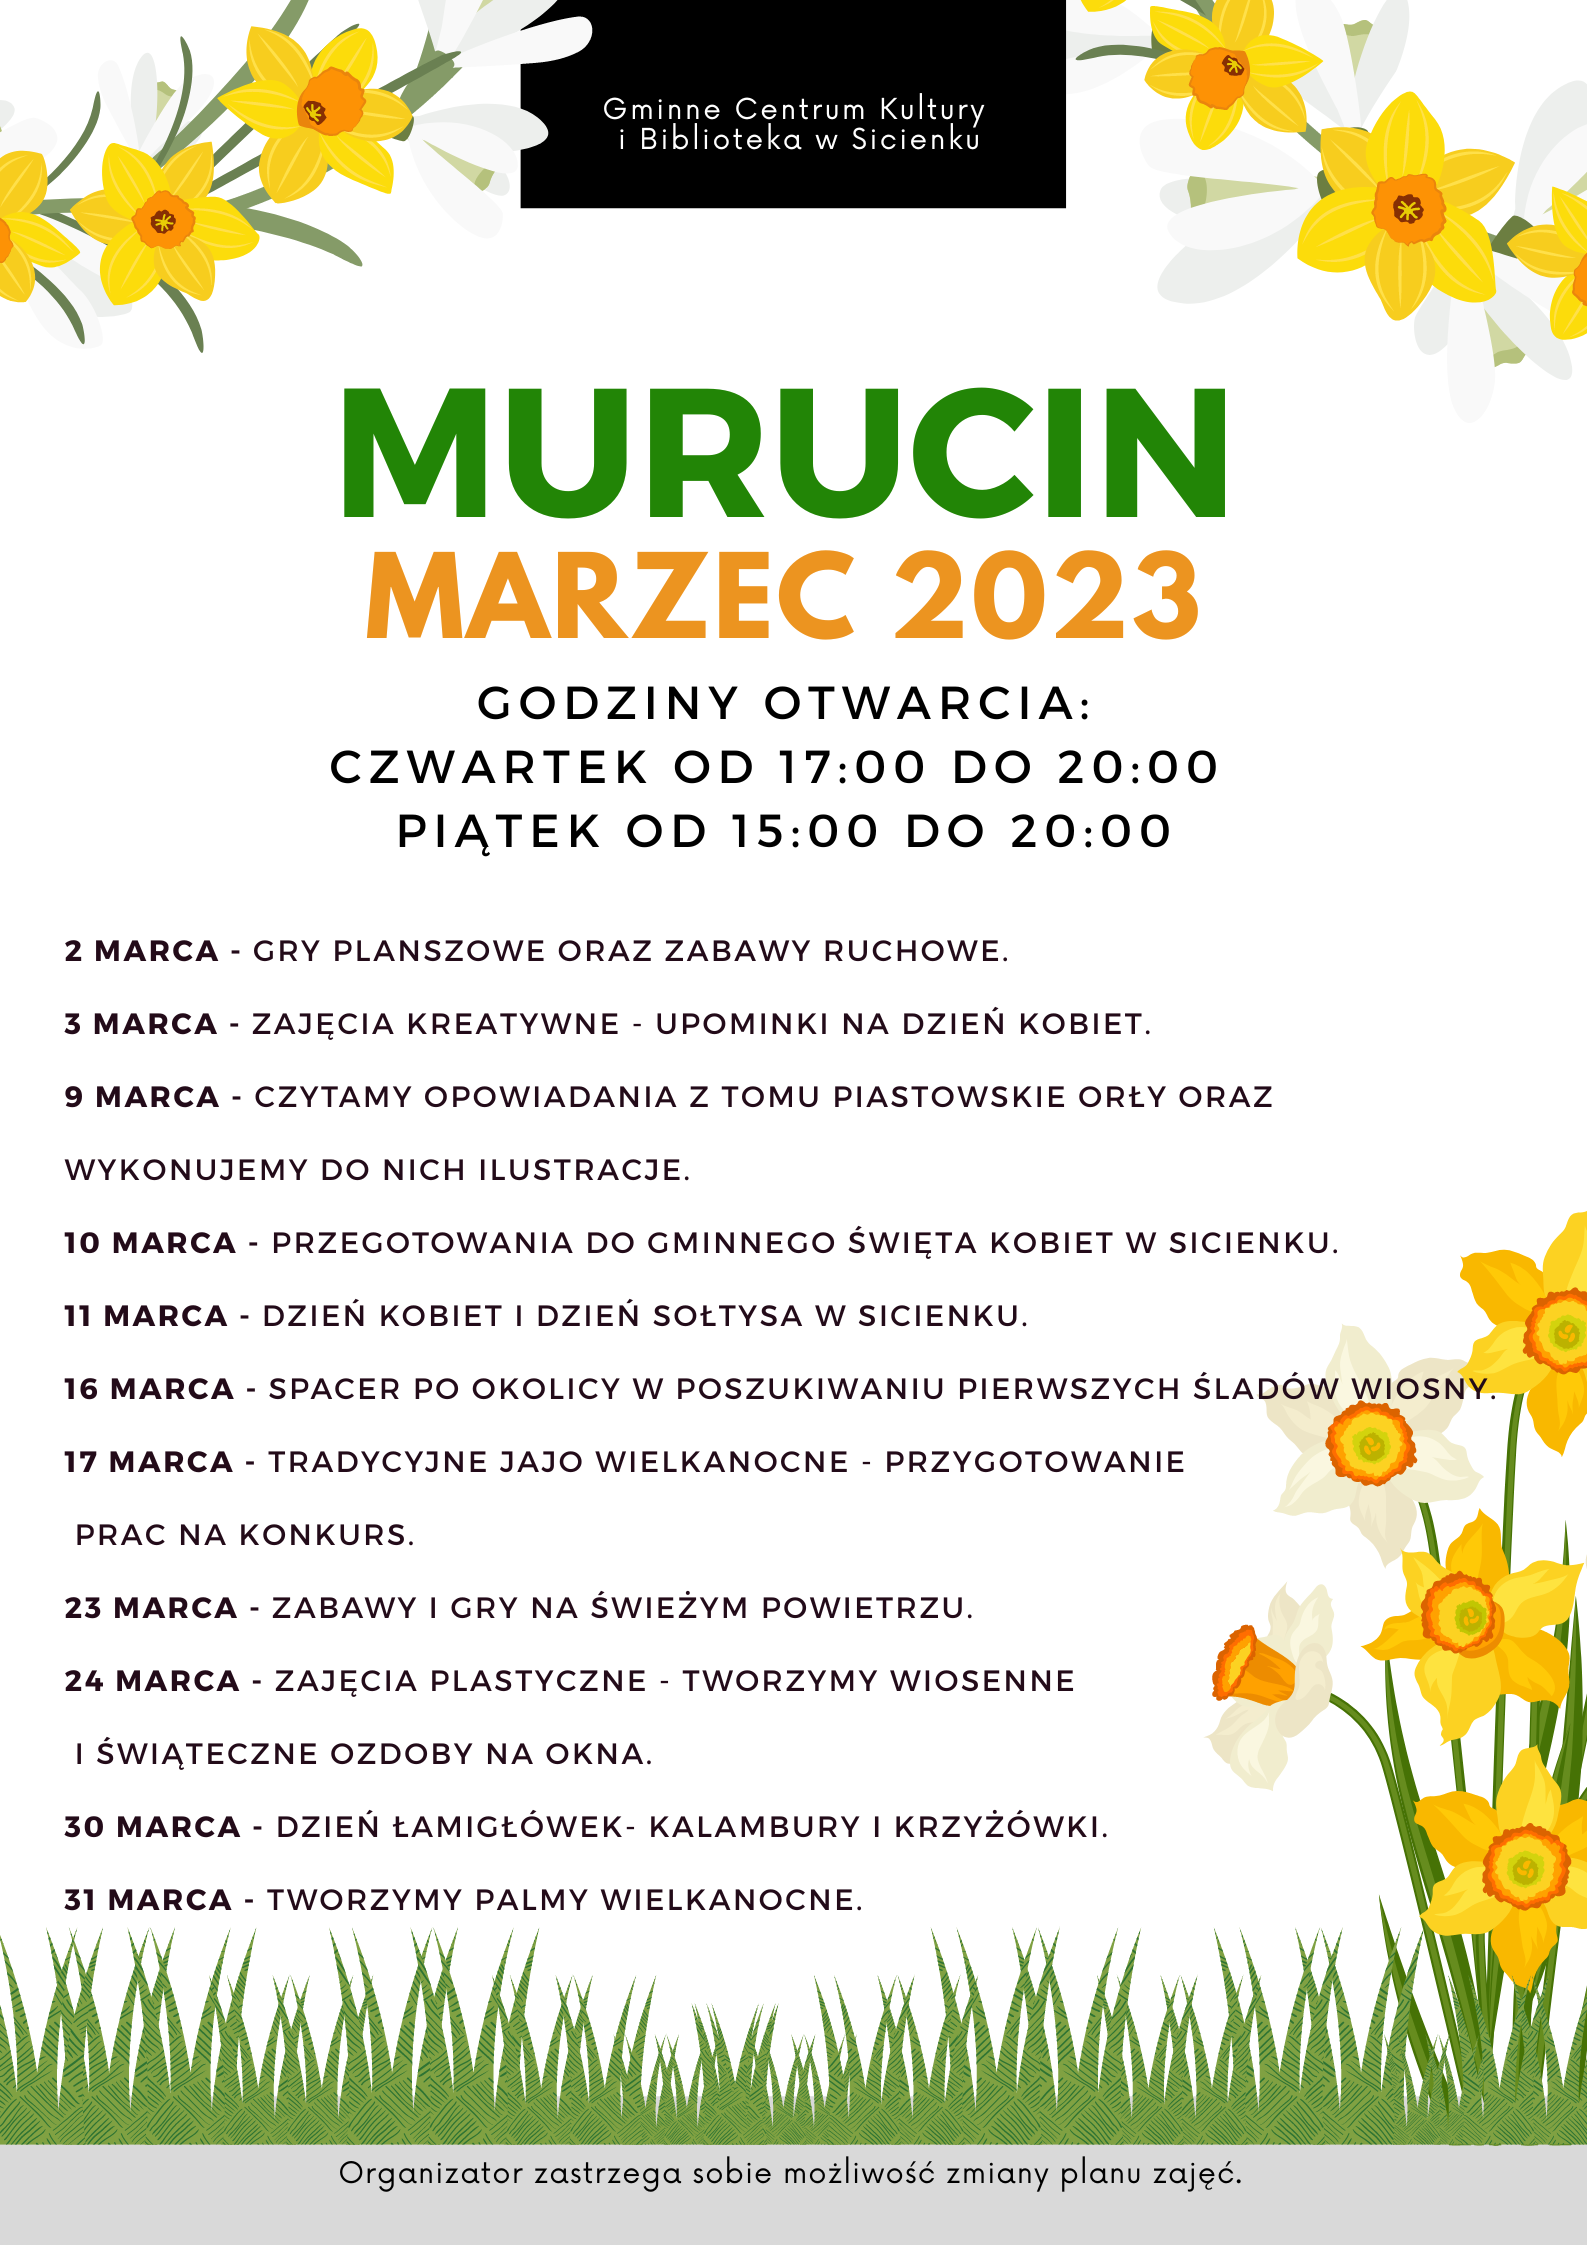 Plan pracy - marzec 2023 Murucin